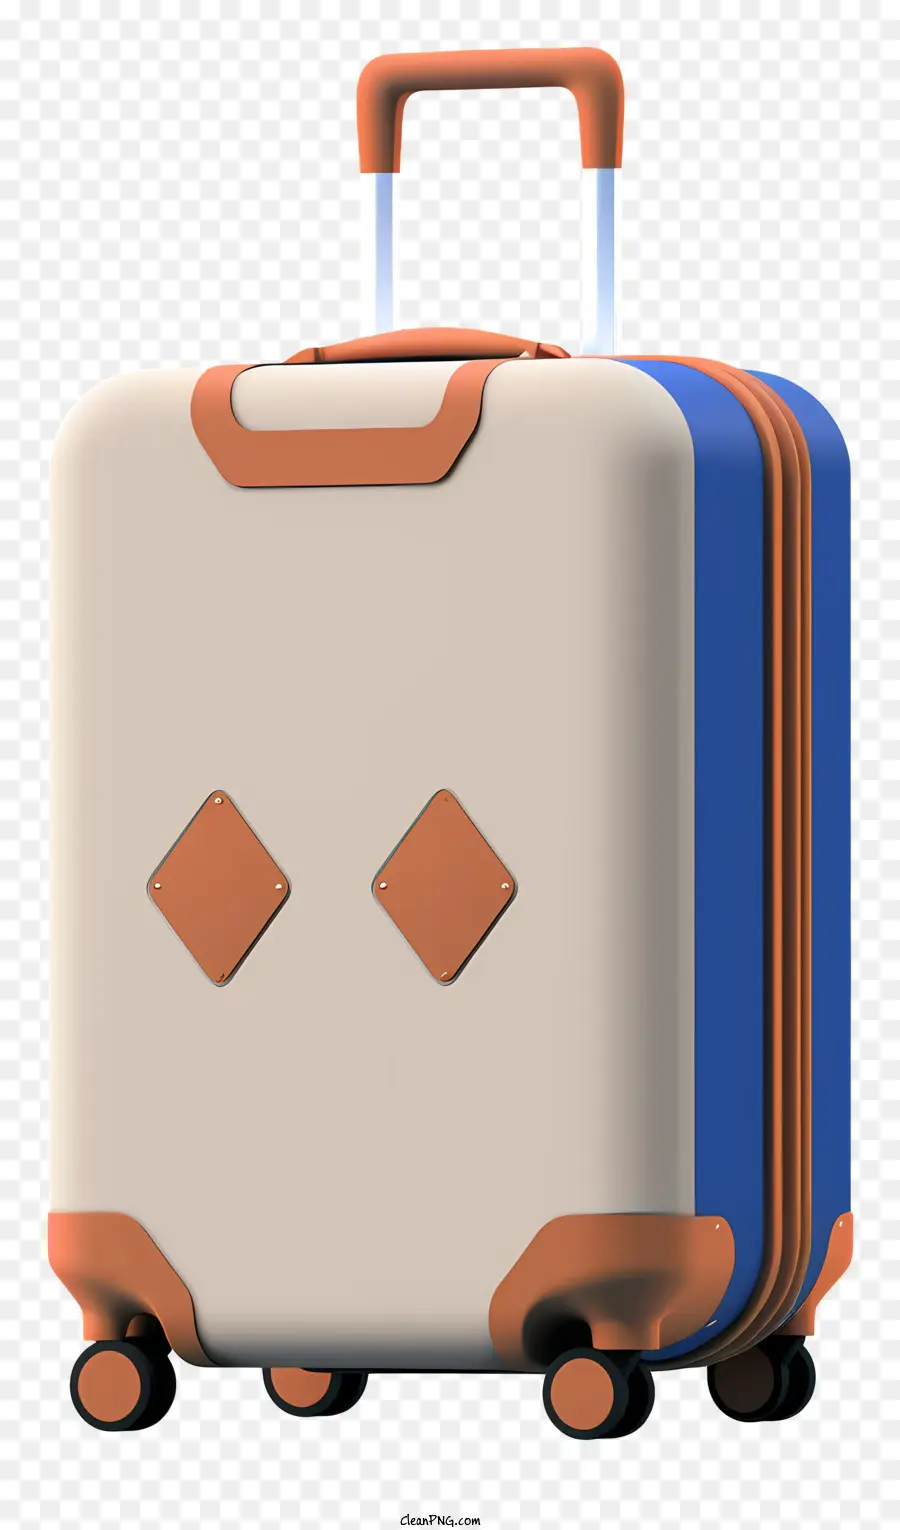 Koffer braun und weißer Leder-/Fasermaterial Griff rot und weiße kreisförmige Form - Brauner und weißer Koffer mit Griff und Schnalle